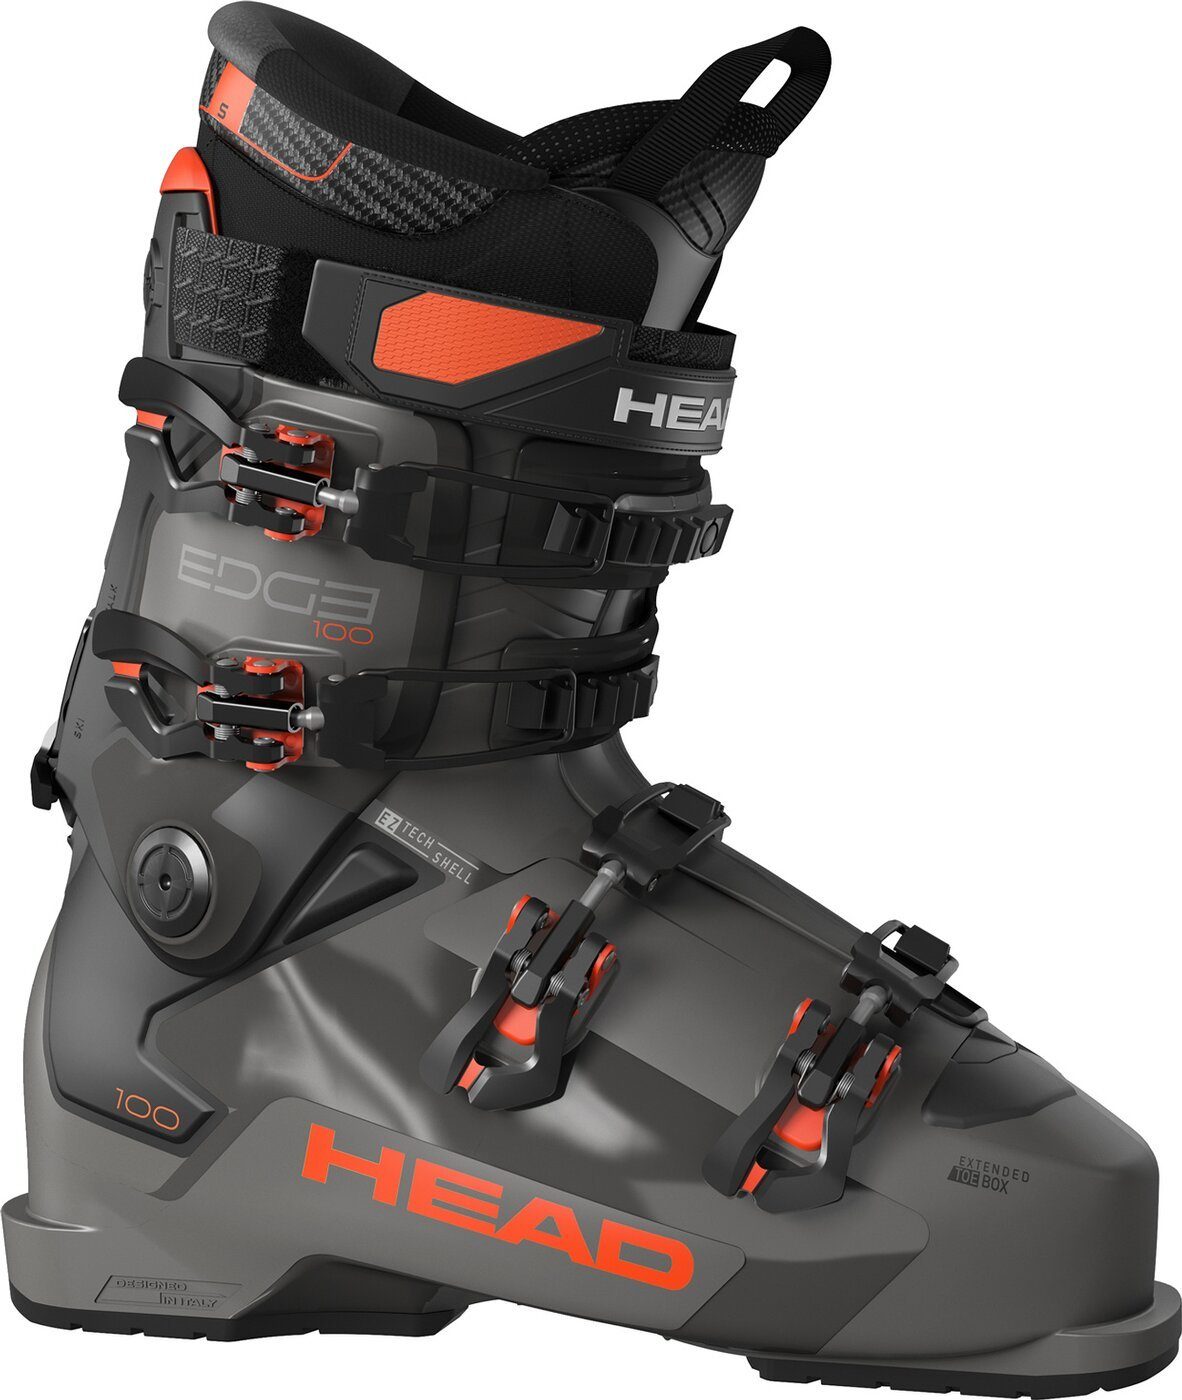 Head Ski EDGE 100 HV ANTHRACITE/RED -